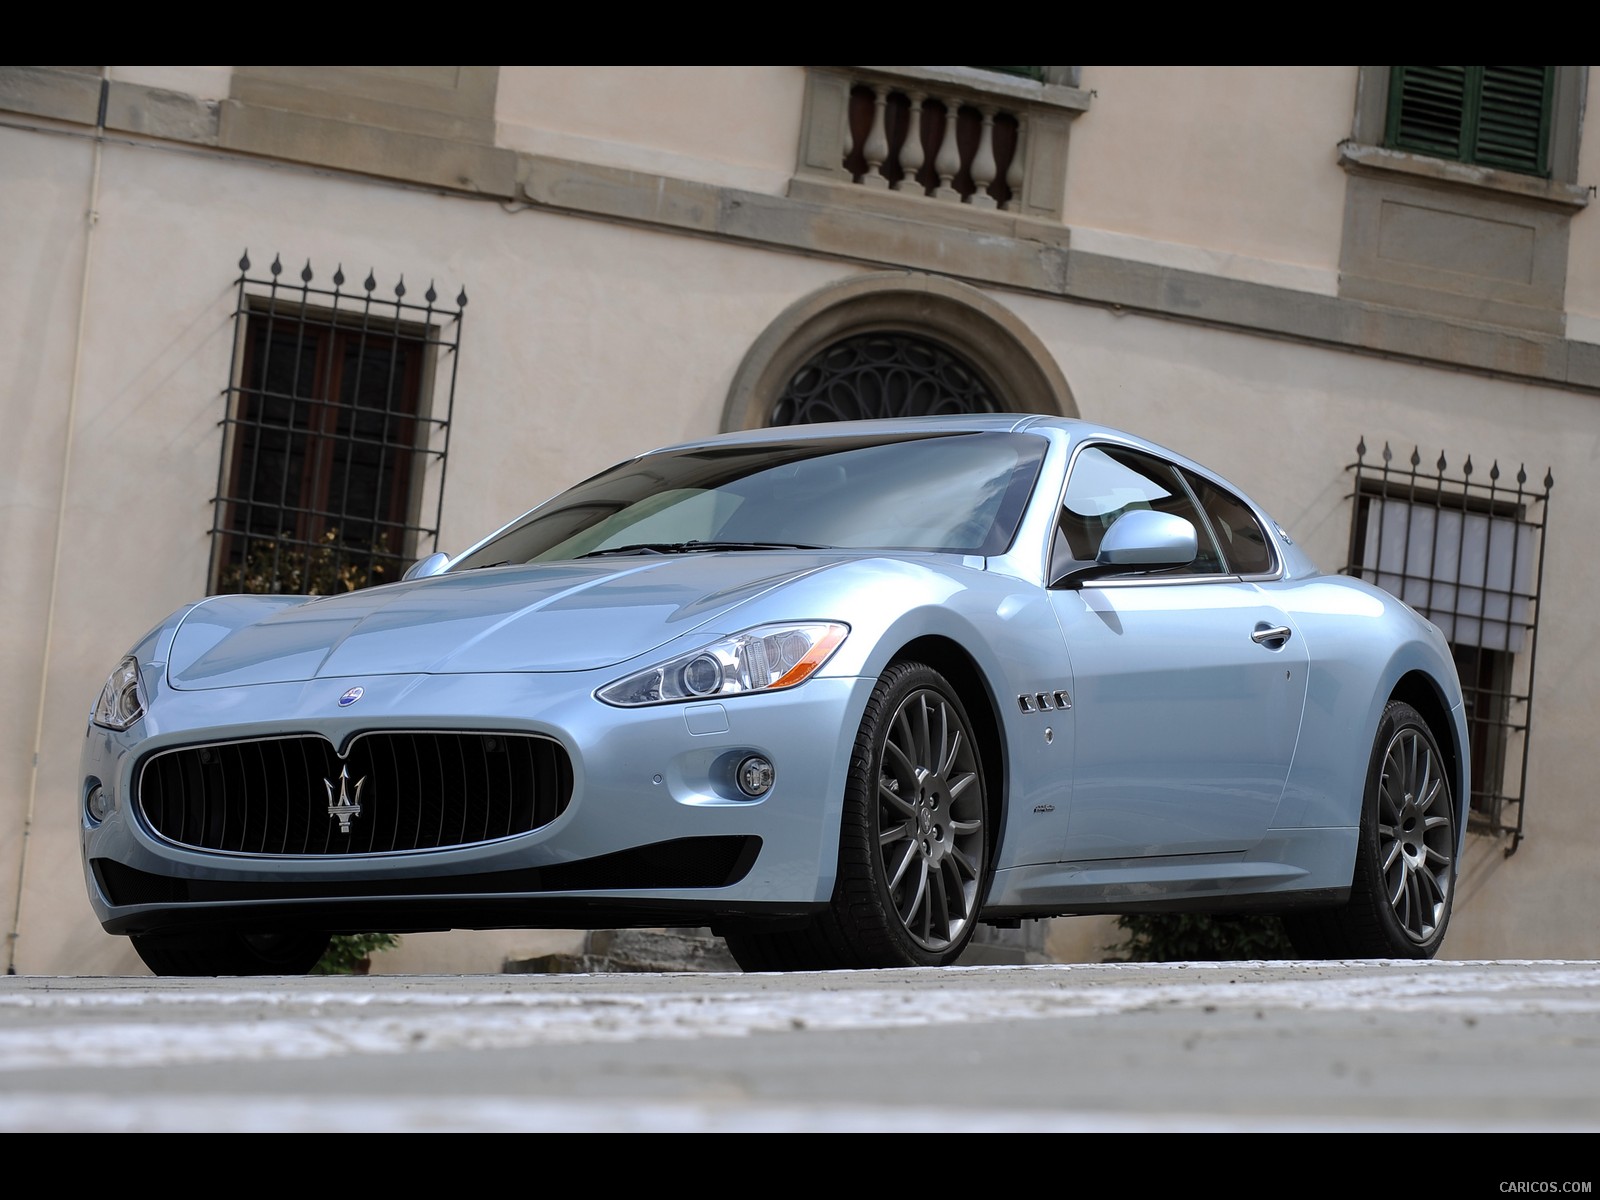 Maserati GranTurismo S Automatic (2010)  - Front Angle , #38 of 58